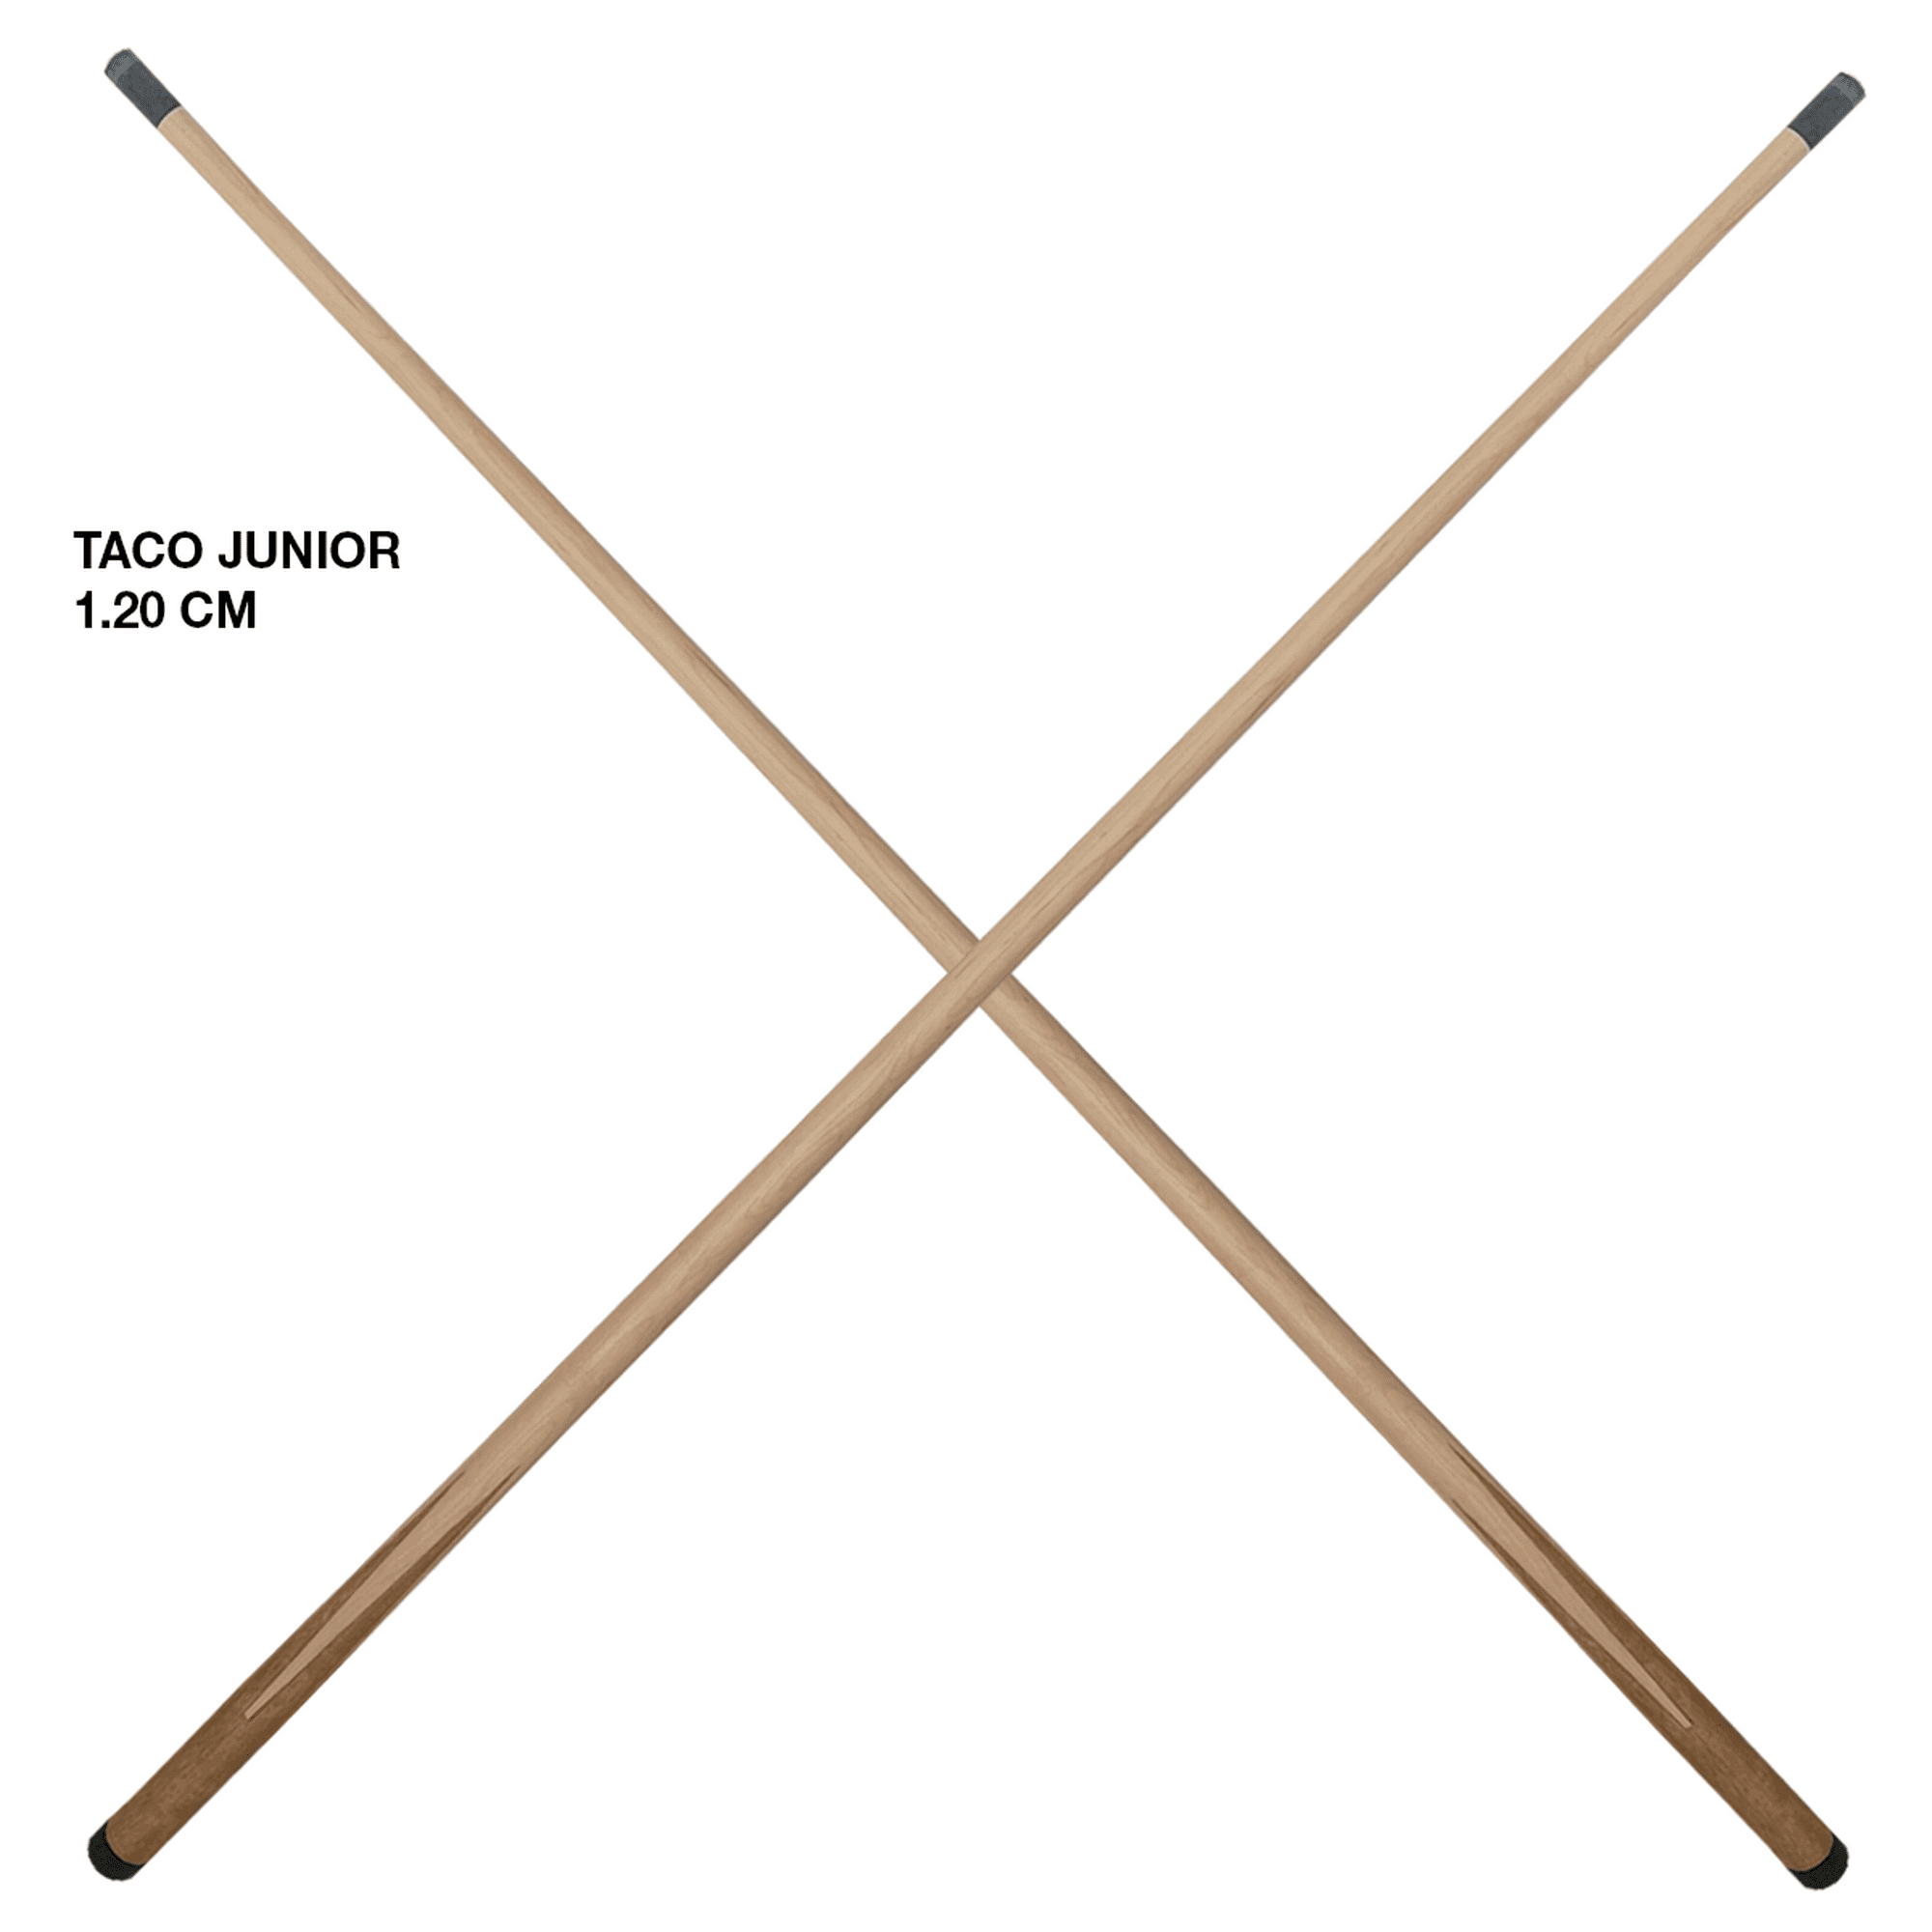  LMDX - 2 tacos de billar para niños, puntas de taco de 0.394  in, completamente rectas, para el hogar, escuela, niños, entretenimiento,  47 pulgadas, 8.5 oz de madera dura para tacos